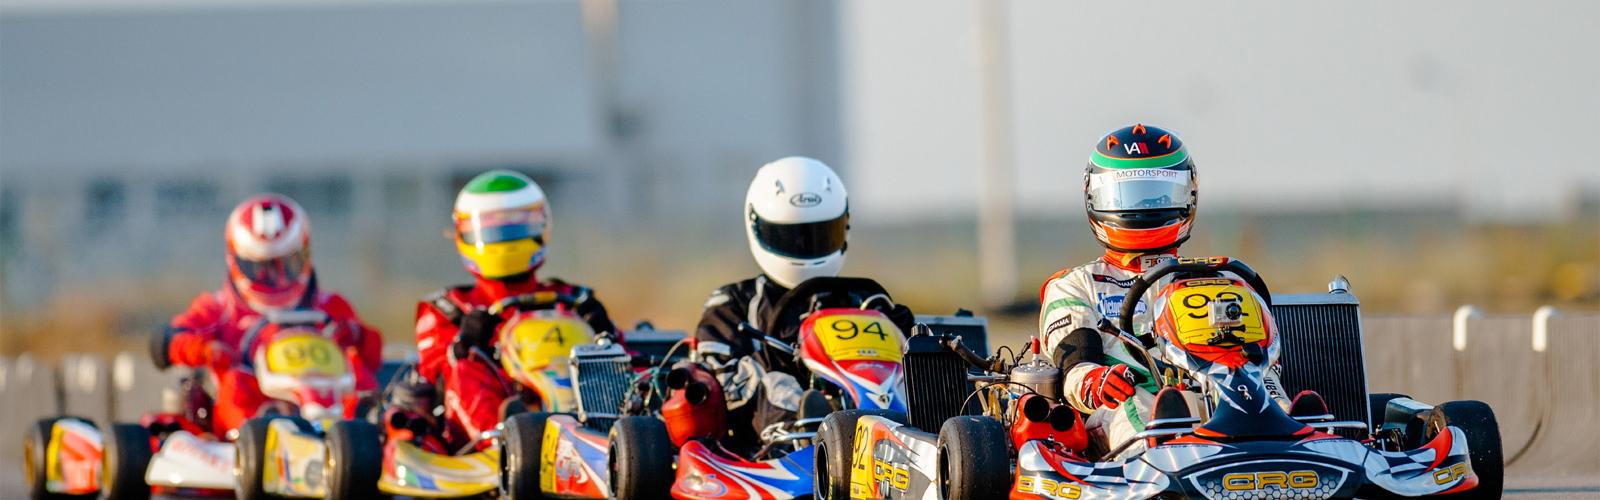 Grand Prix de Karting 2014